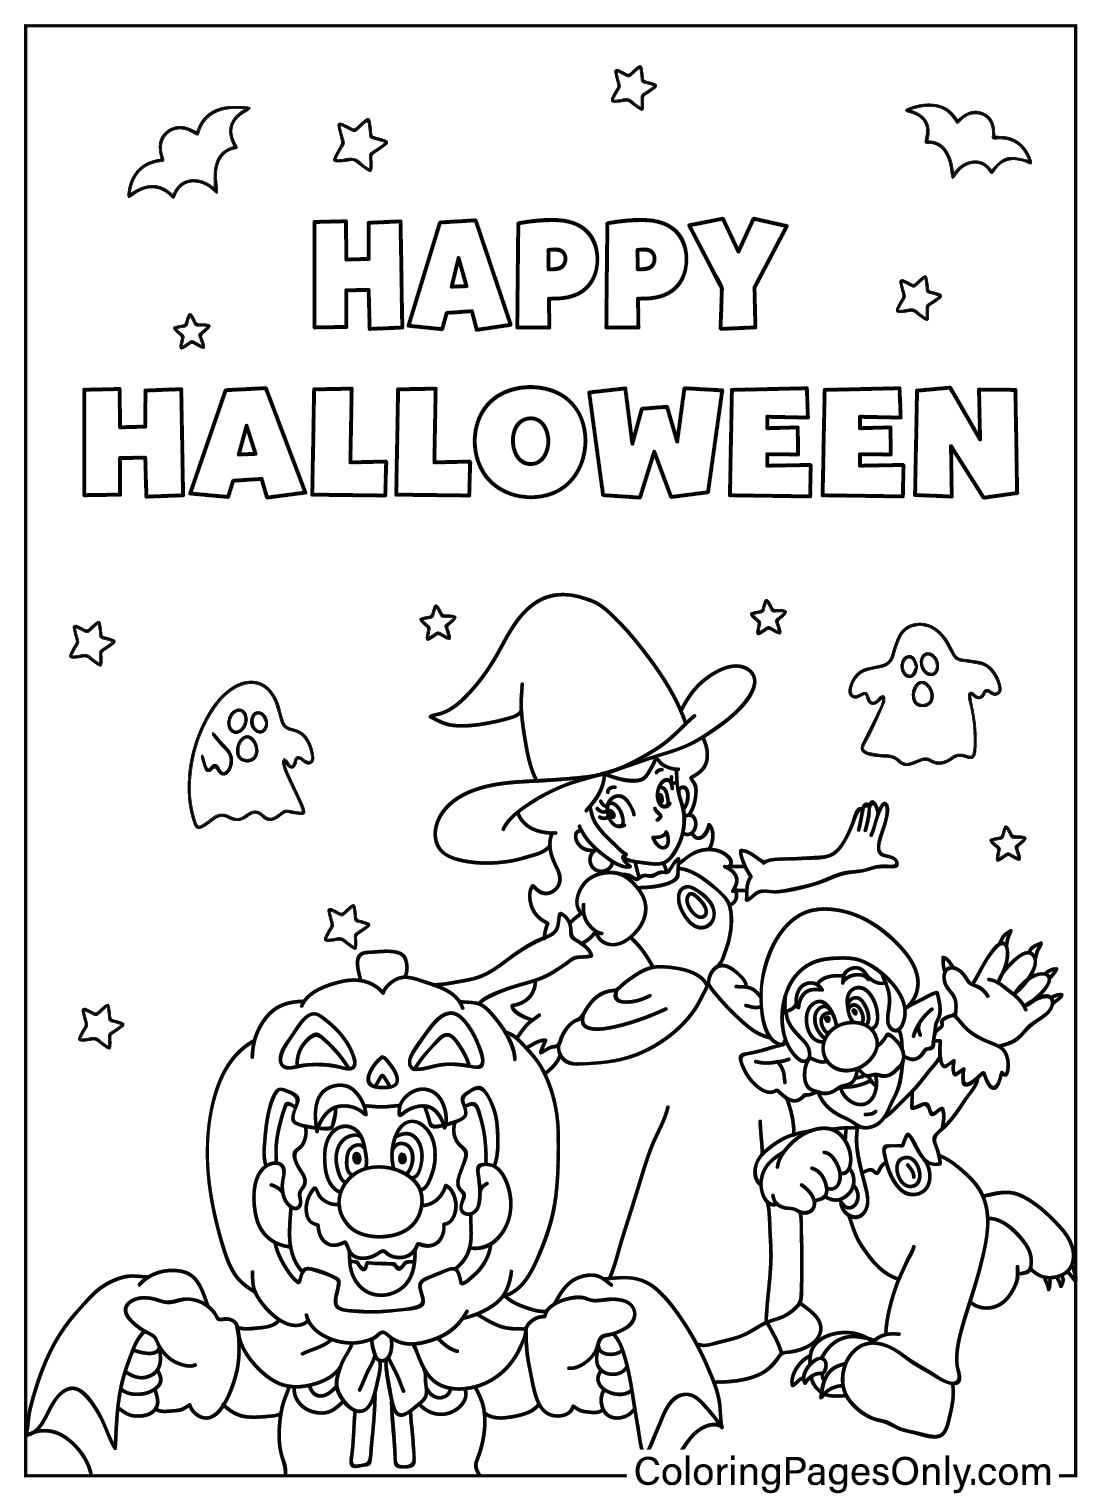 Stampa la pagina da colorare di Mario Halloween da Mario Halloween